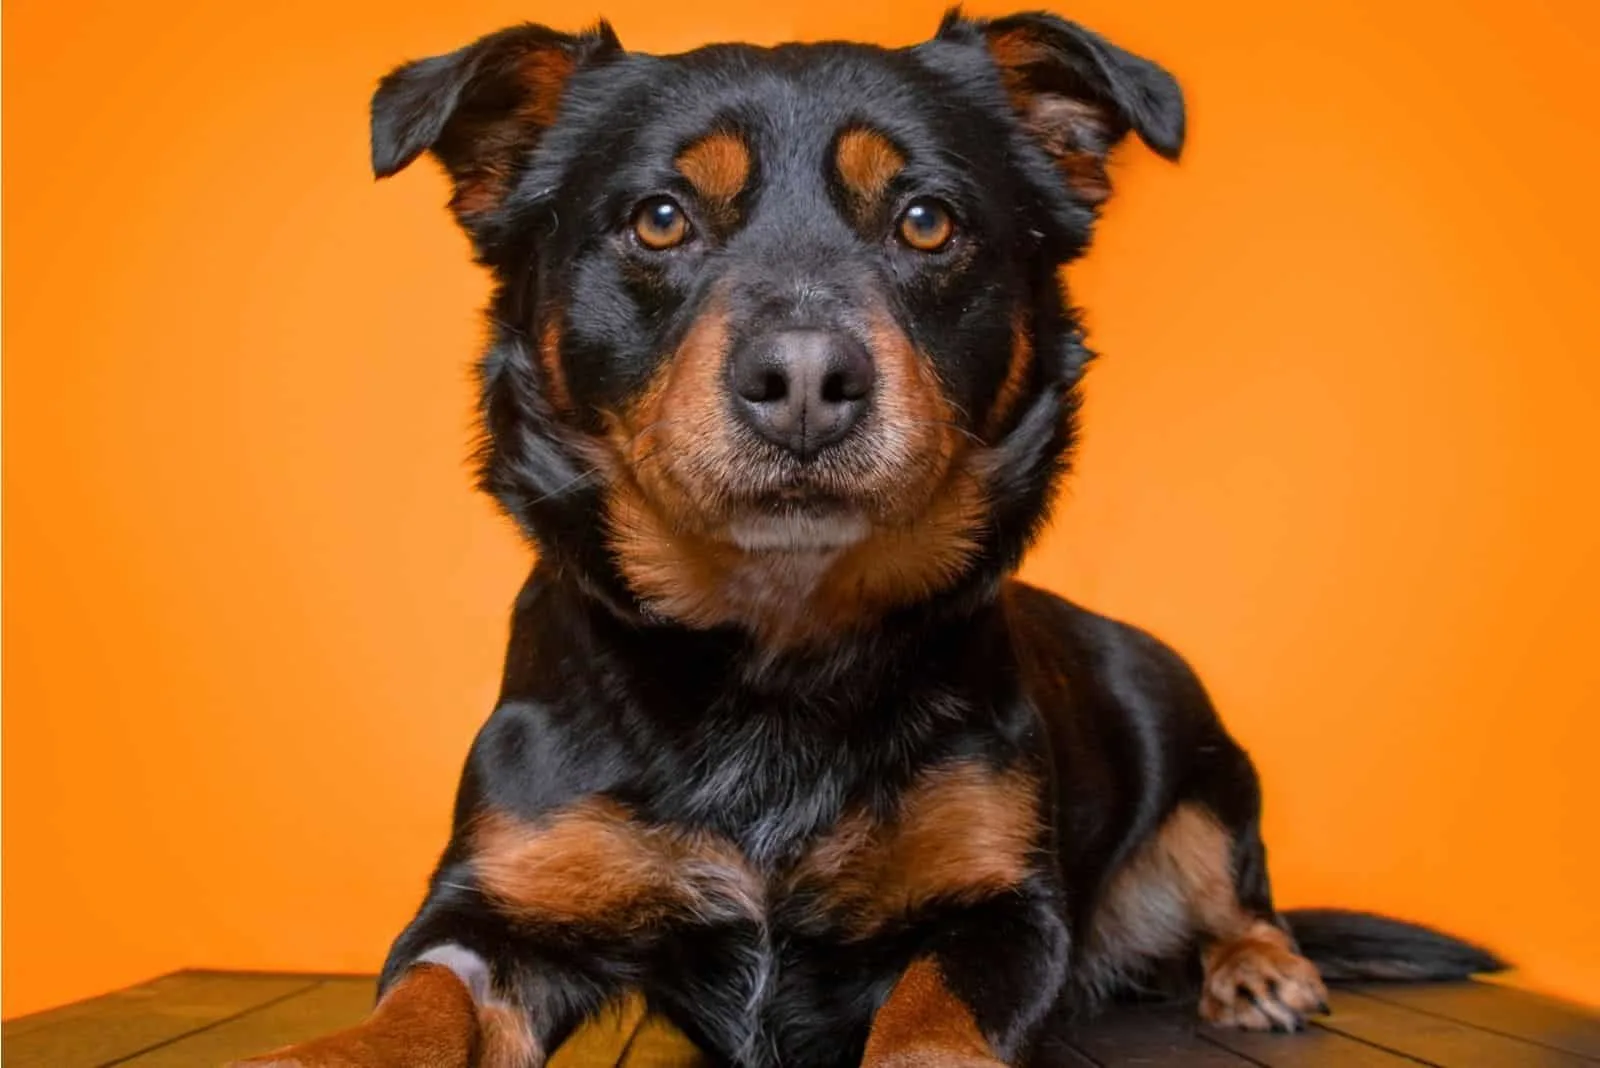 basset hound corgi mix dog in orange background